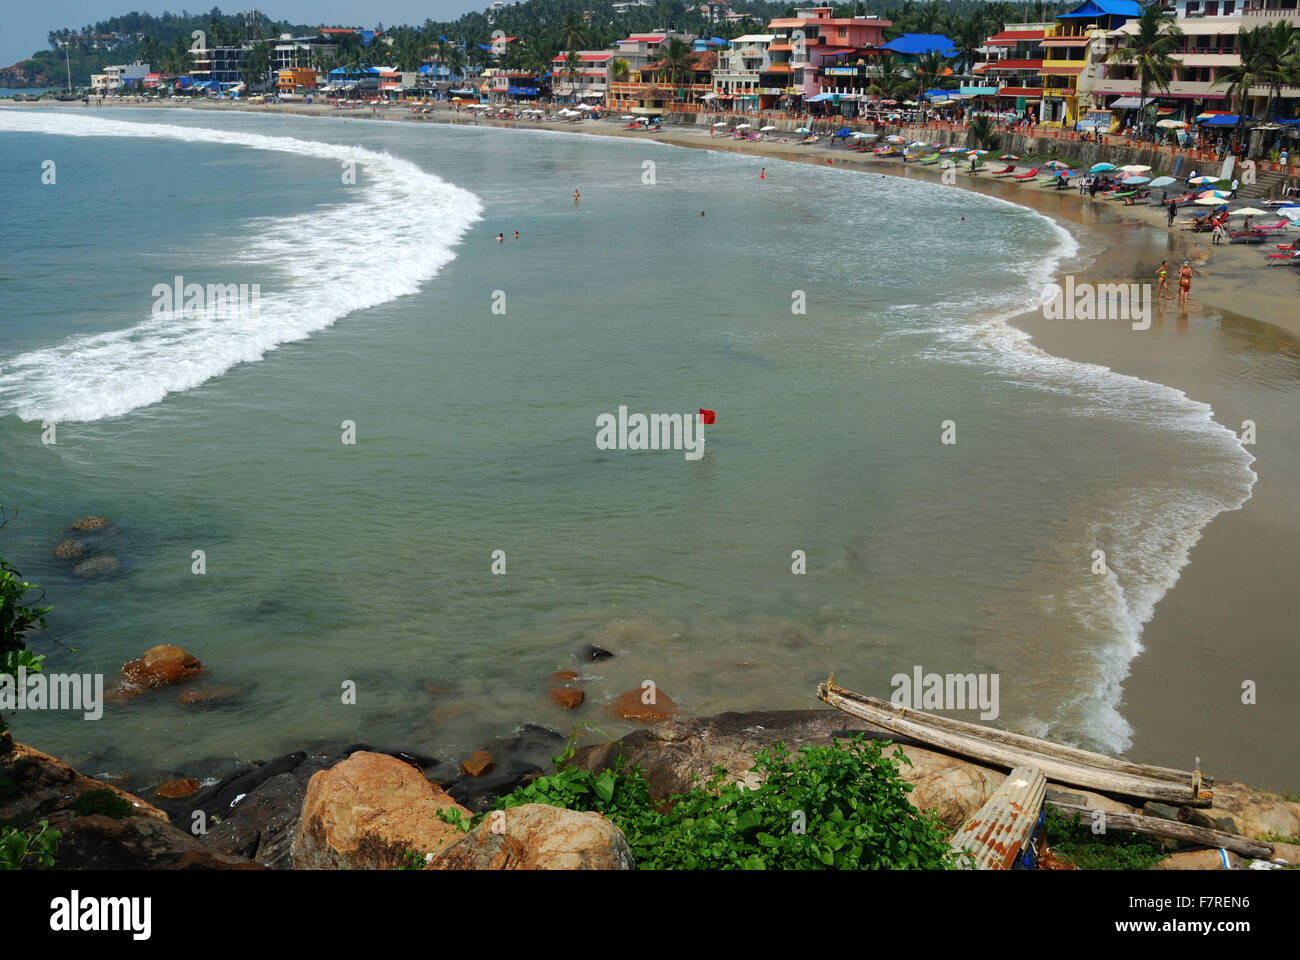 Kovalam beach au Kerala en Inde.C'est une destination touristique internationale située à 15 kms de l'aéroport international de Trivandrum. Banque D'Images